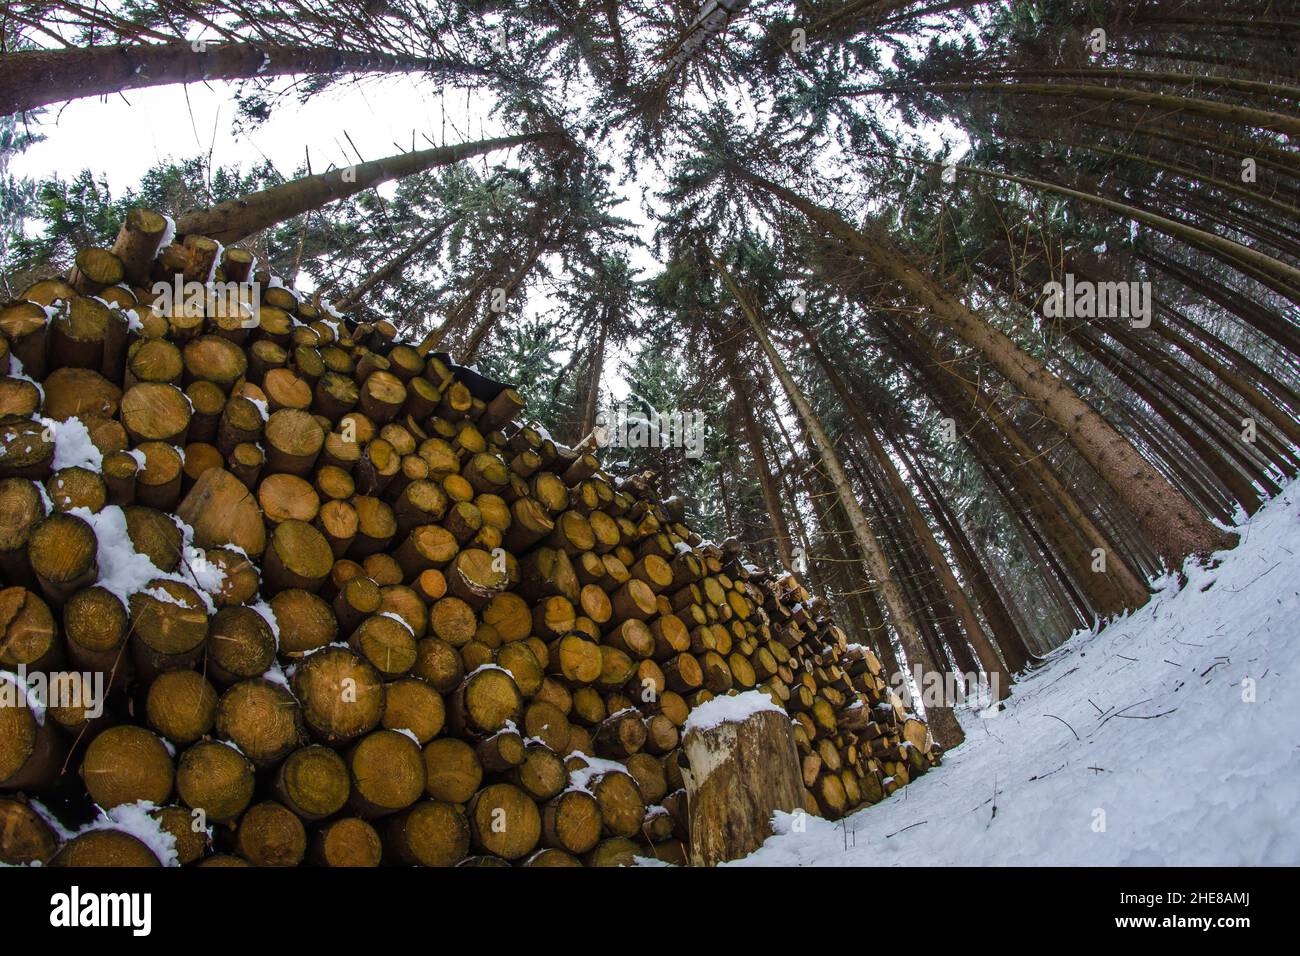 Hromada palivového dřeva v lese přichystaná k odvozu. Stock Photo